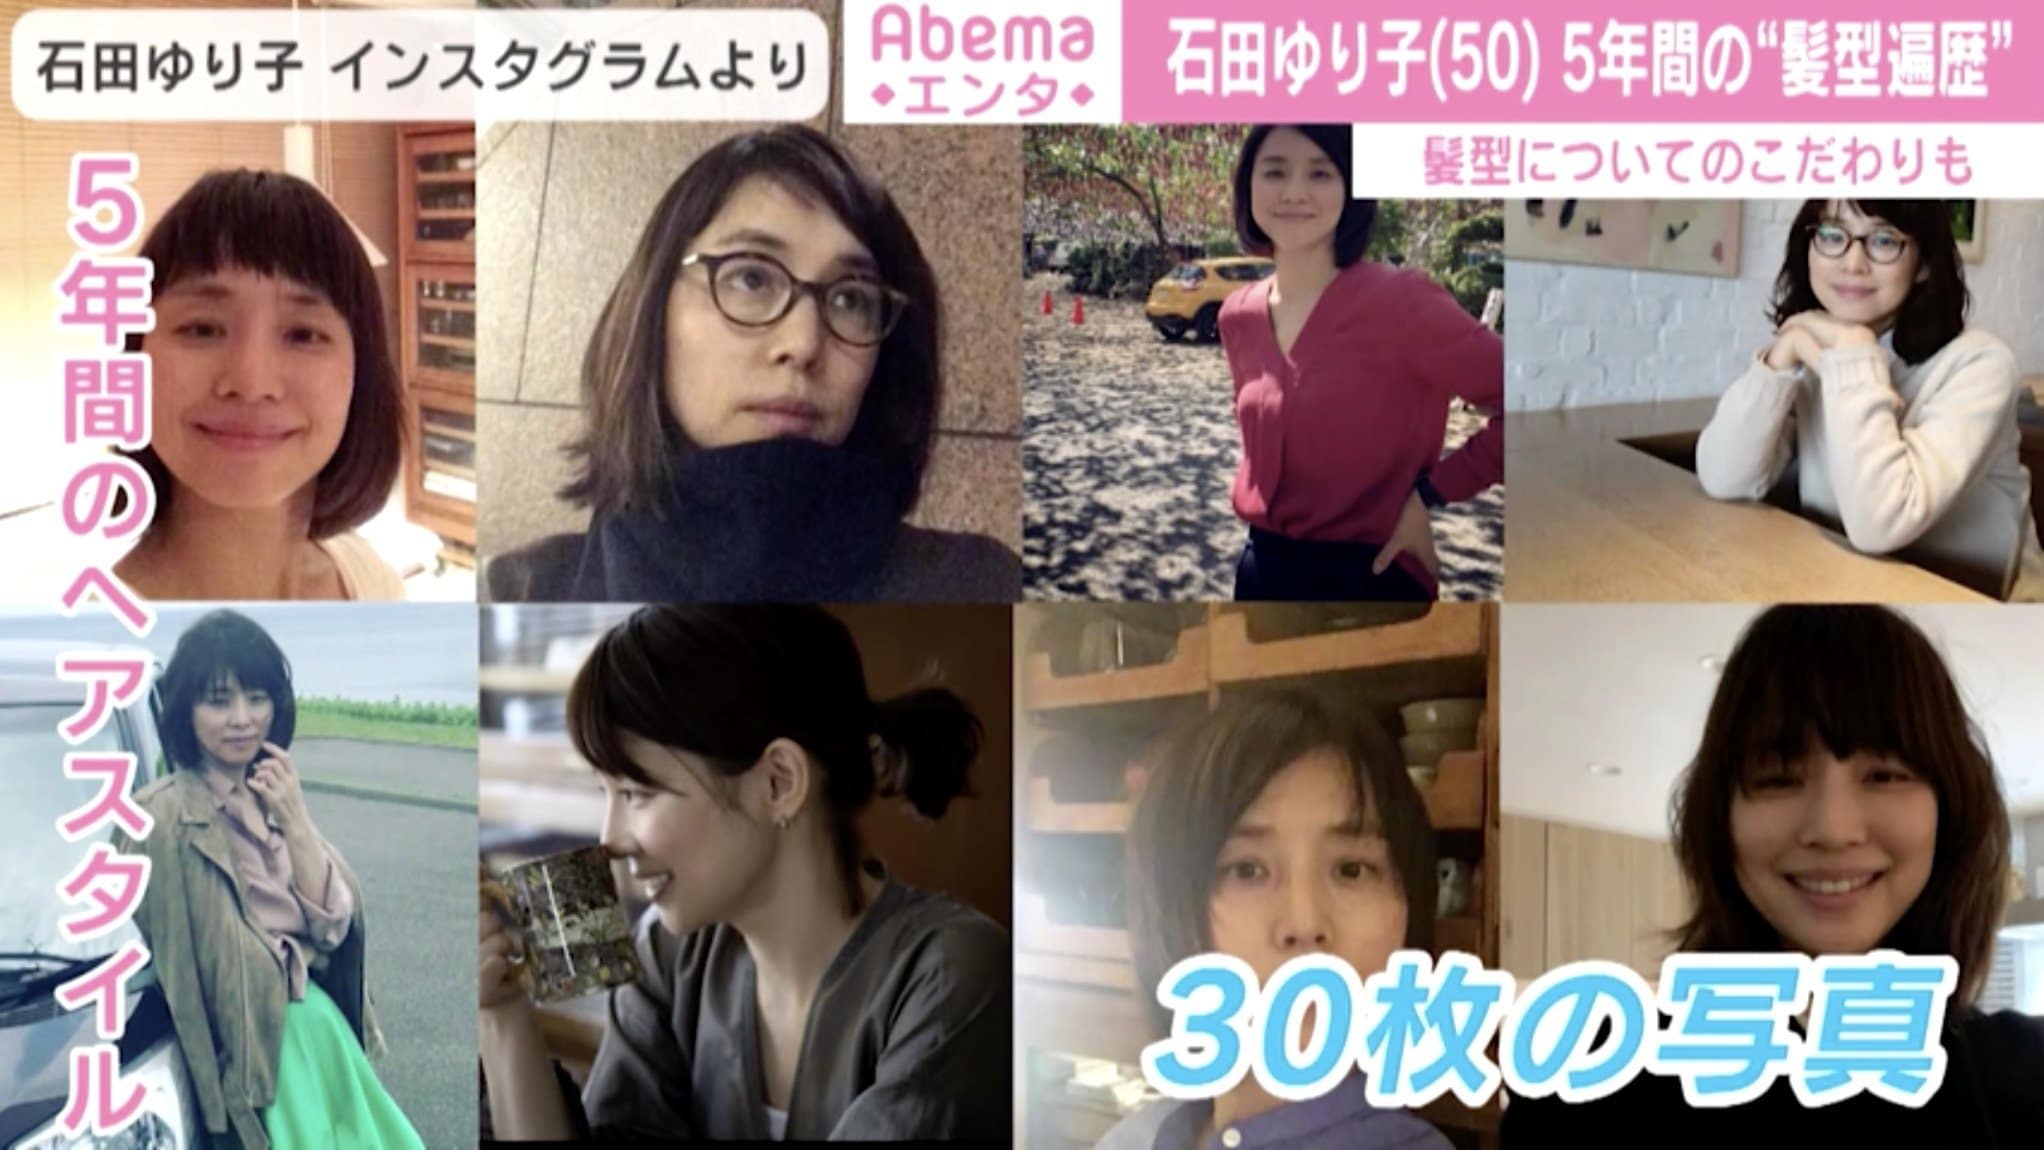 石田ゆり子 5年間の 髪型遍歴 が話題 美しさは変わらない 年を重ねるごとに可愛くなる の声 芸能 Abema Times